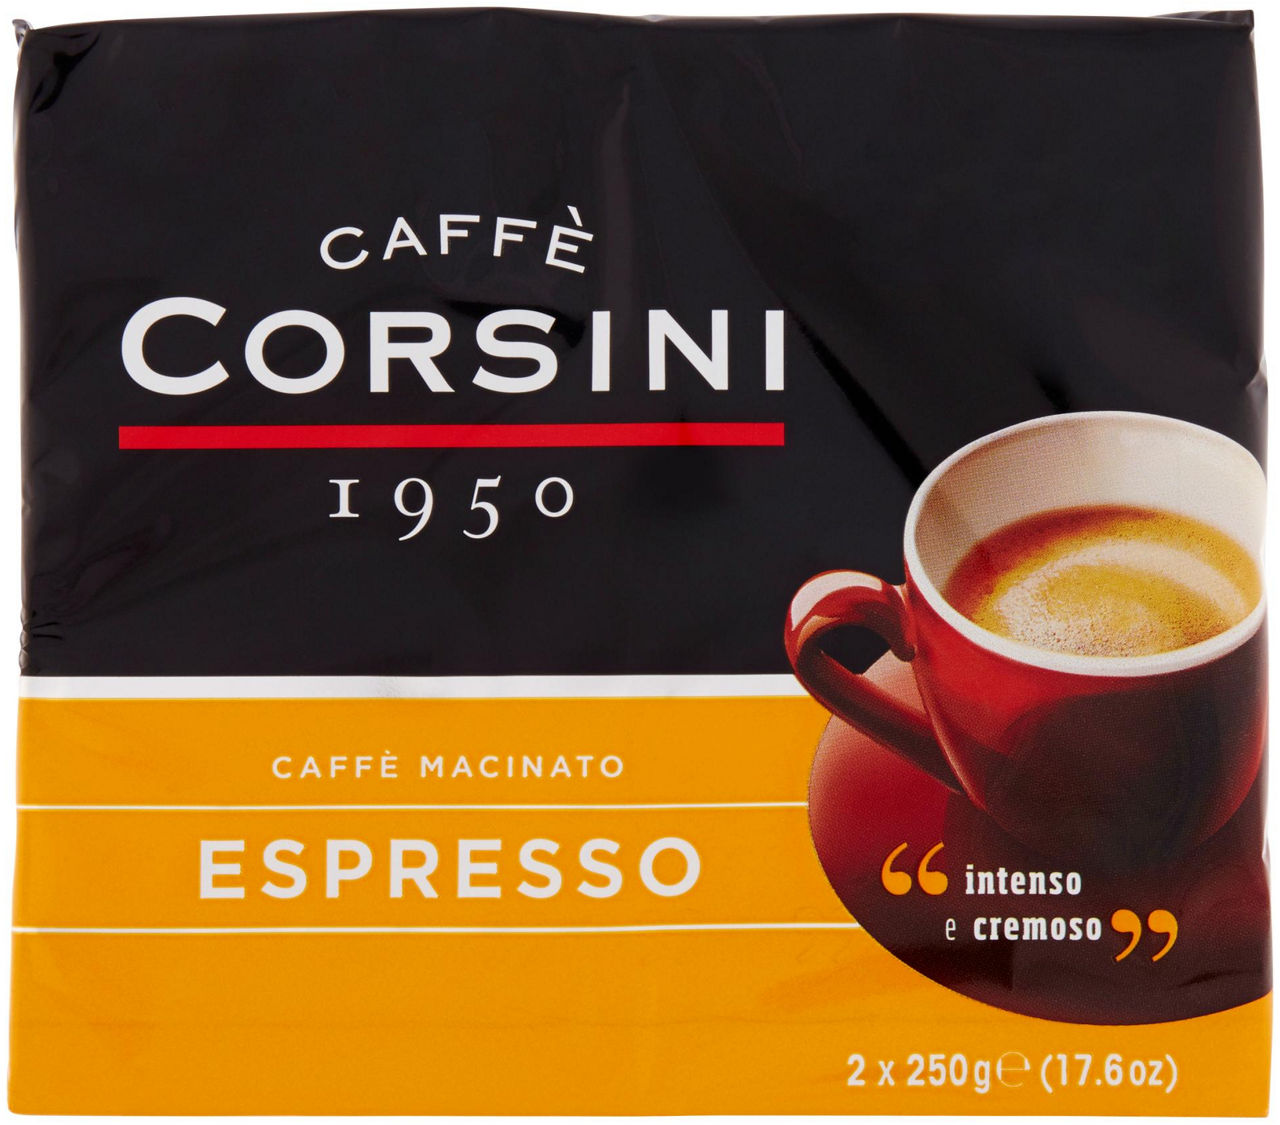 Caffe' corsini espresso casa bipack sacchetto gr. 250x2